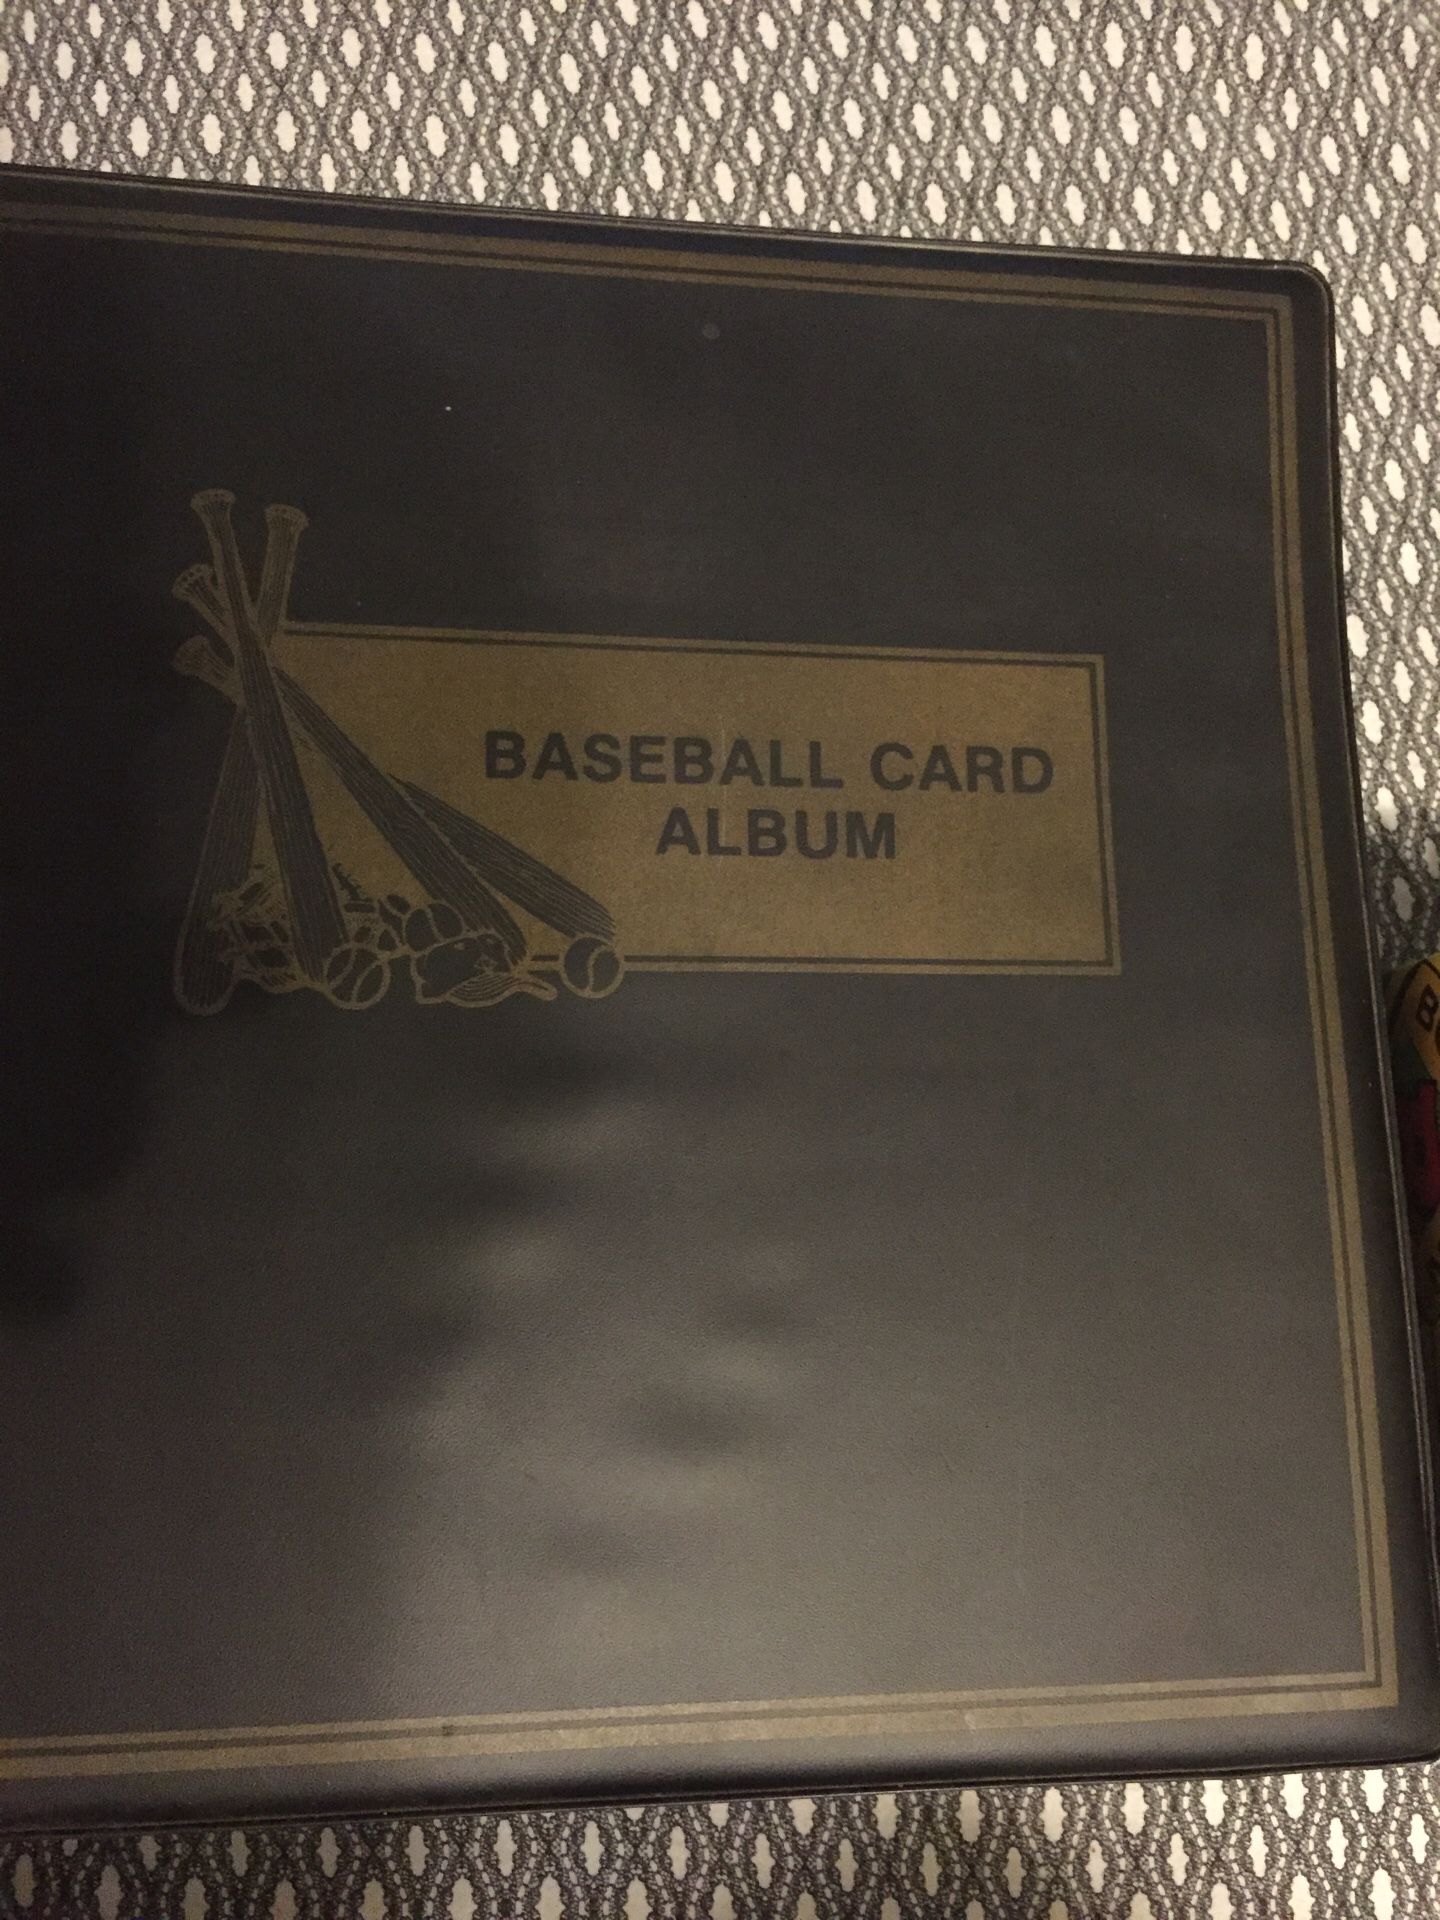 Baseball and basketball cards